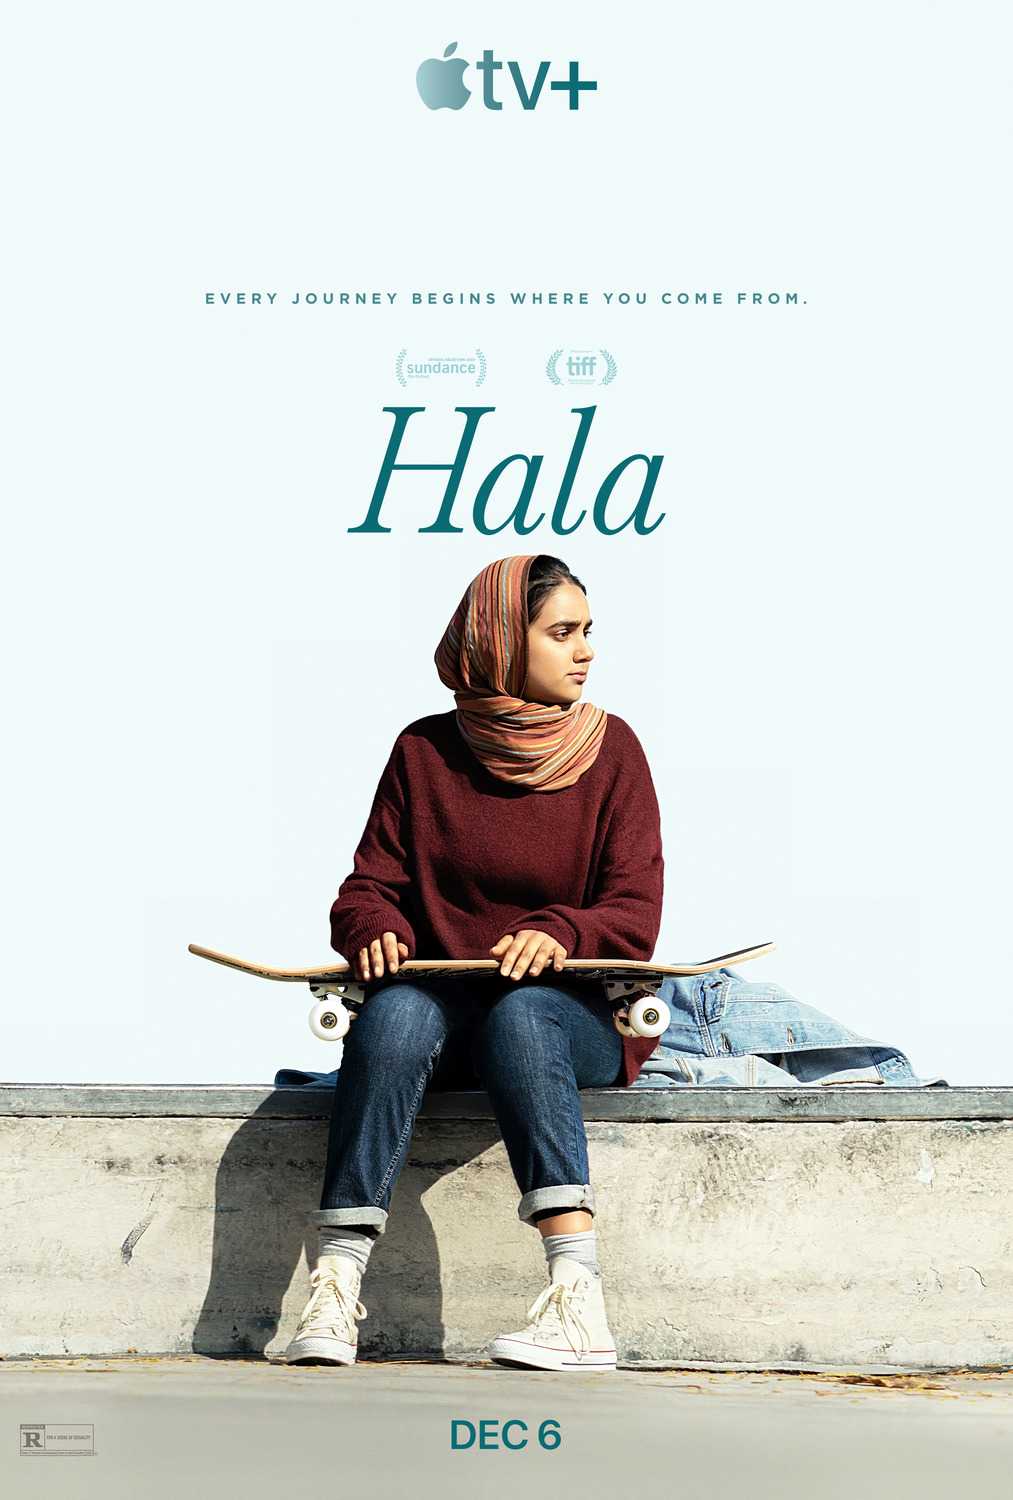 مشاهدة فيلم Hala 2019 مترجم